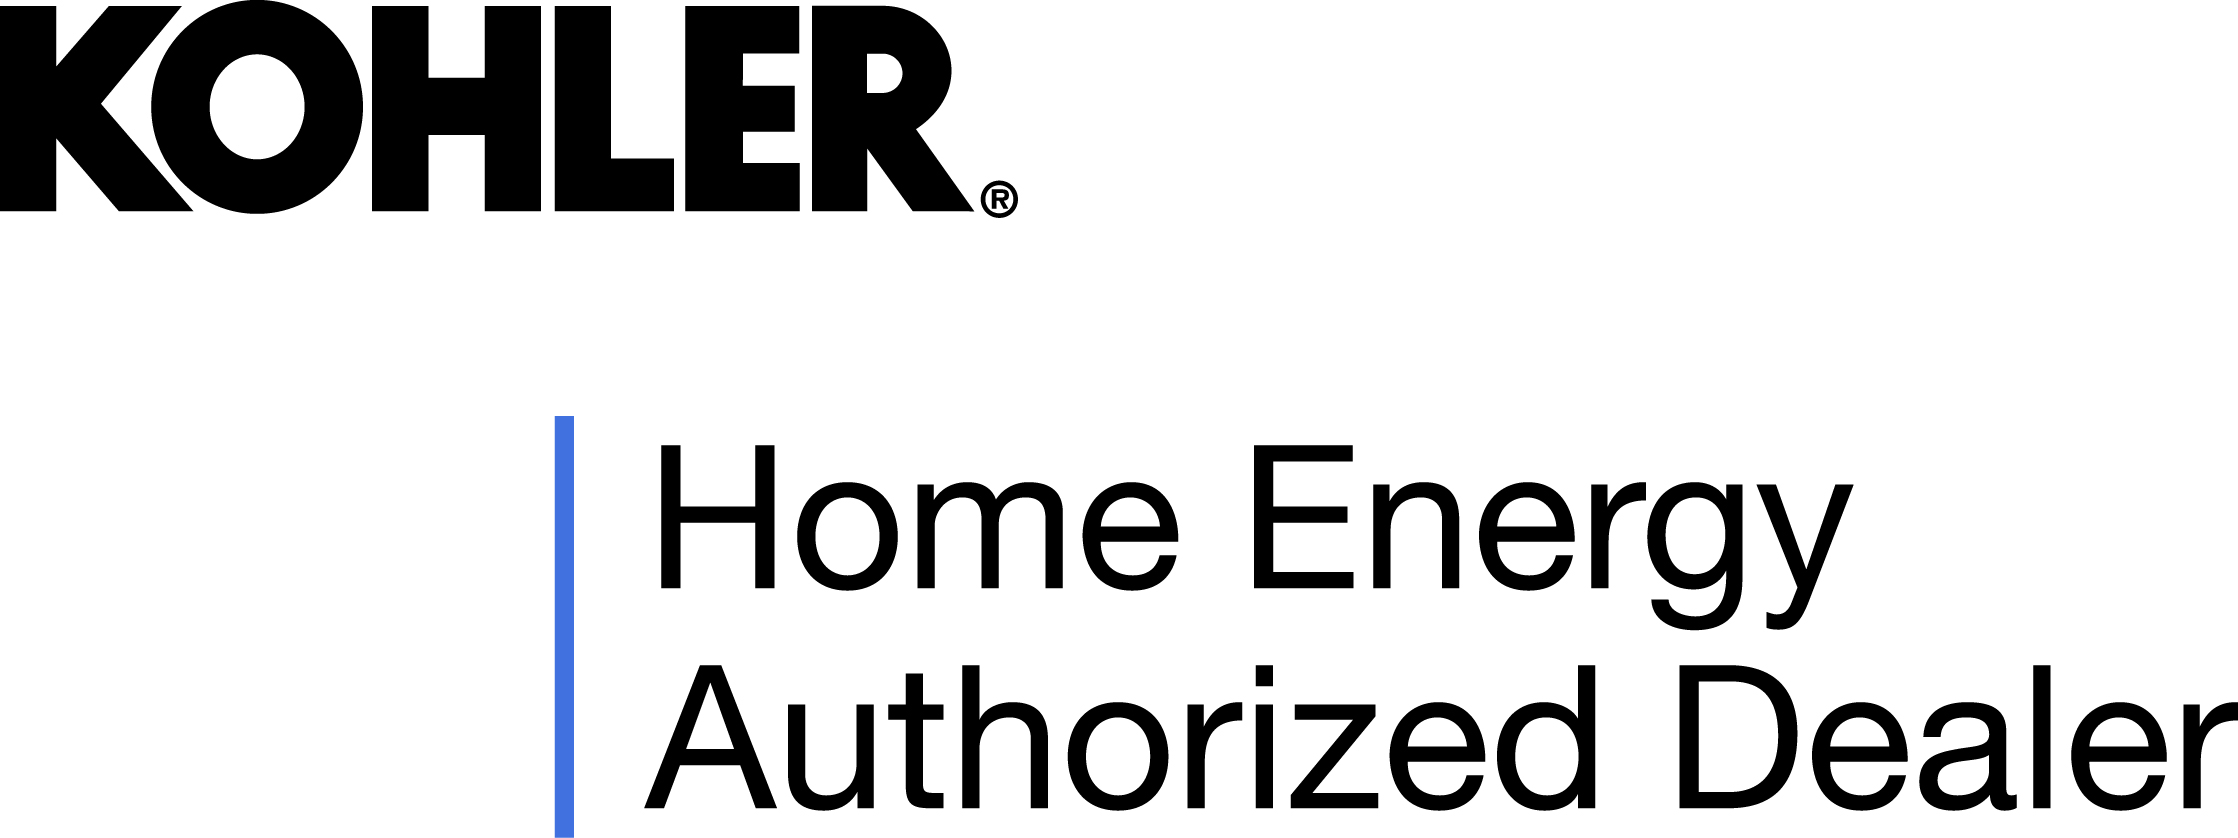 Kohler Home Energy Authorized Dealer logo